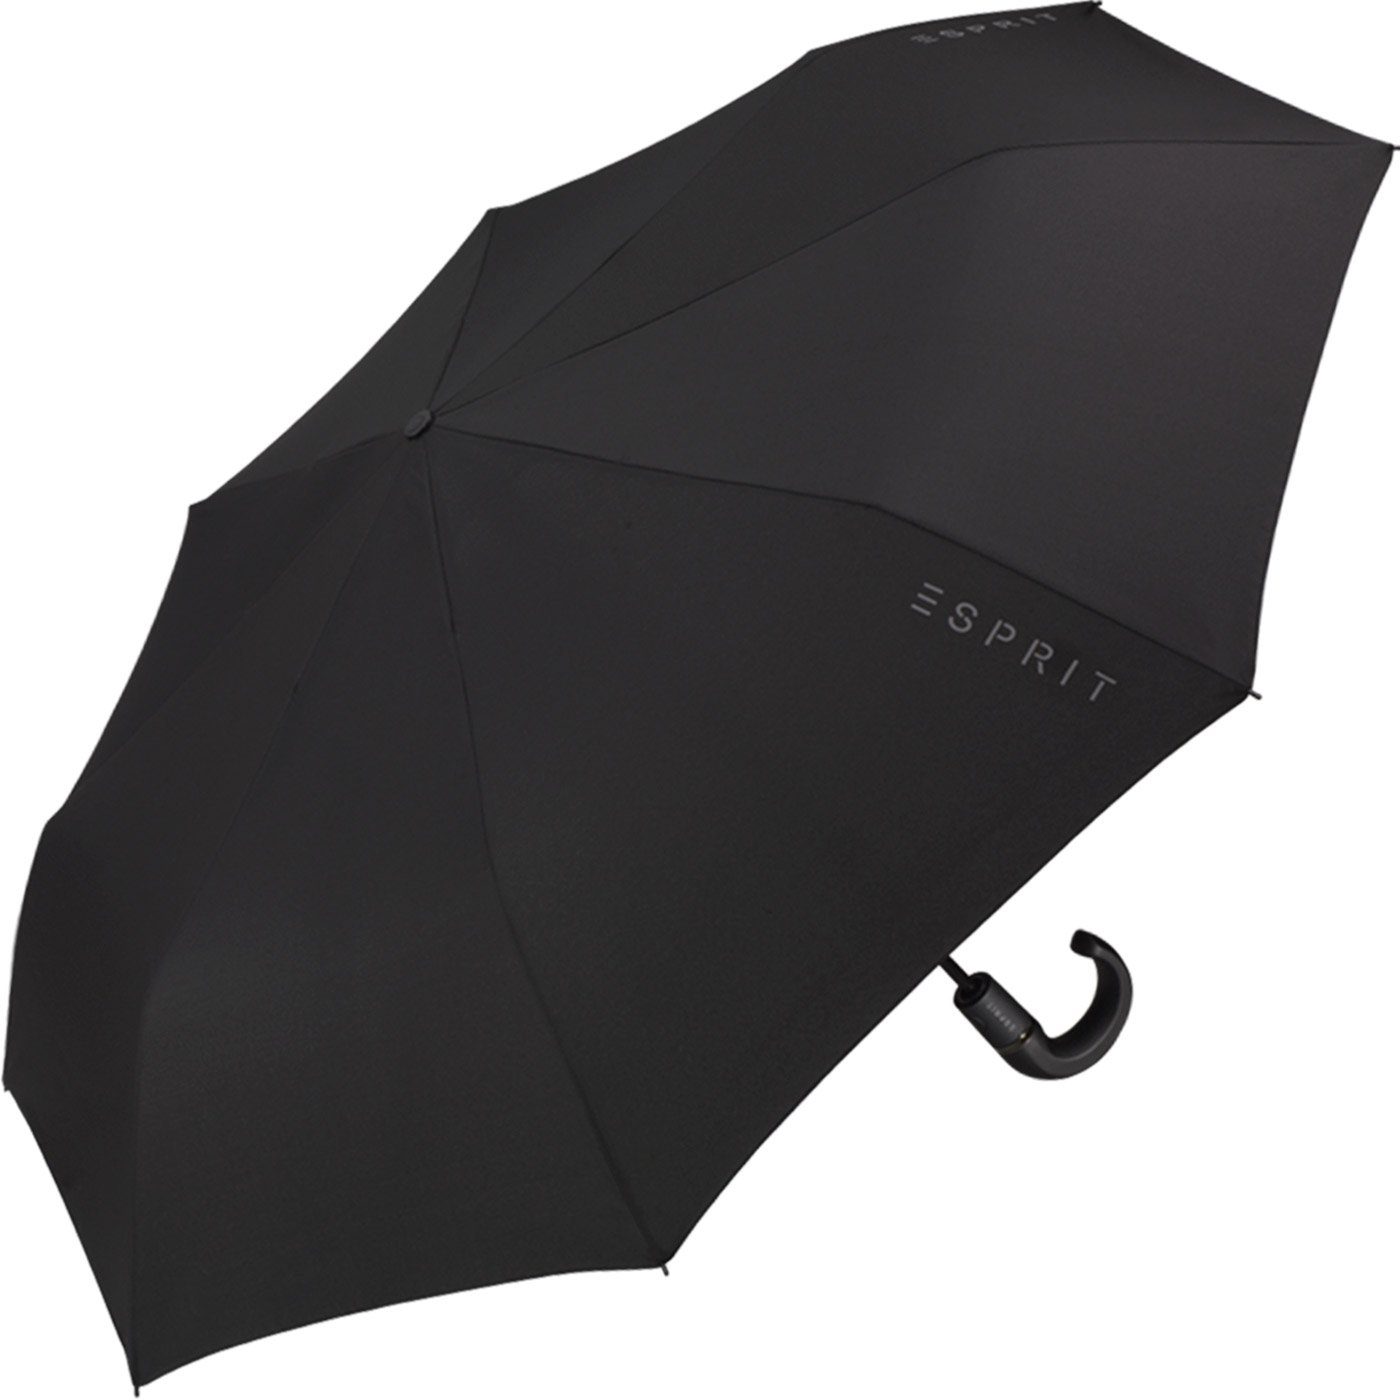 und - Esprit Rundhakengriff Herren-Schirm mit praktisch stabil Gents, Easymatic Taschenregenschirm